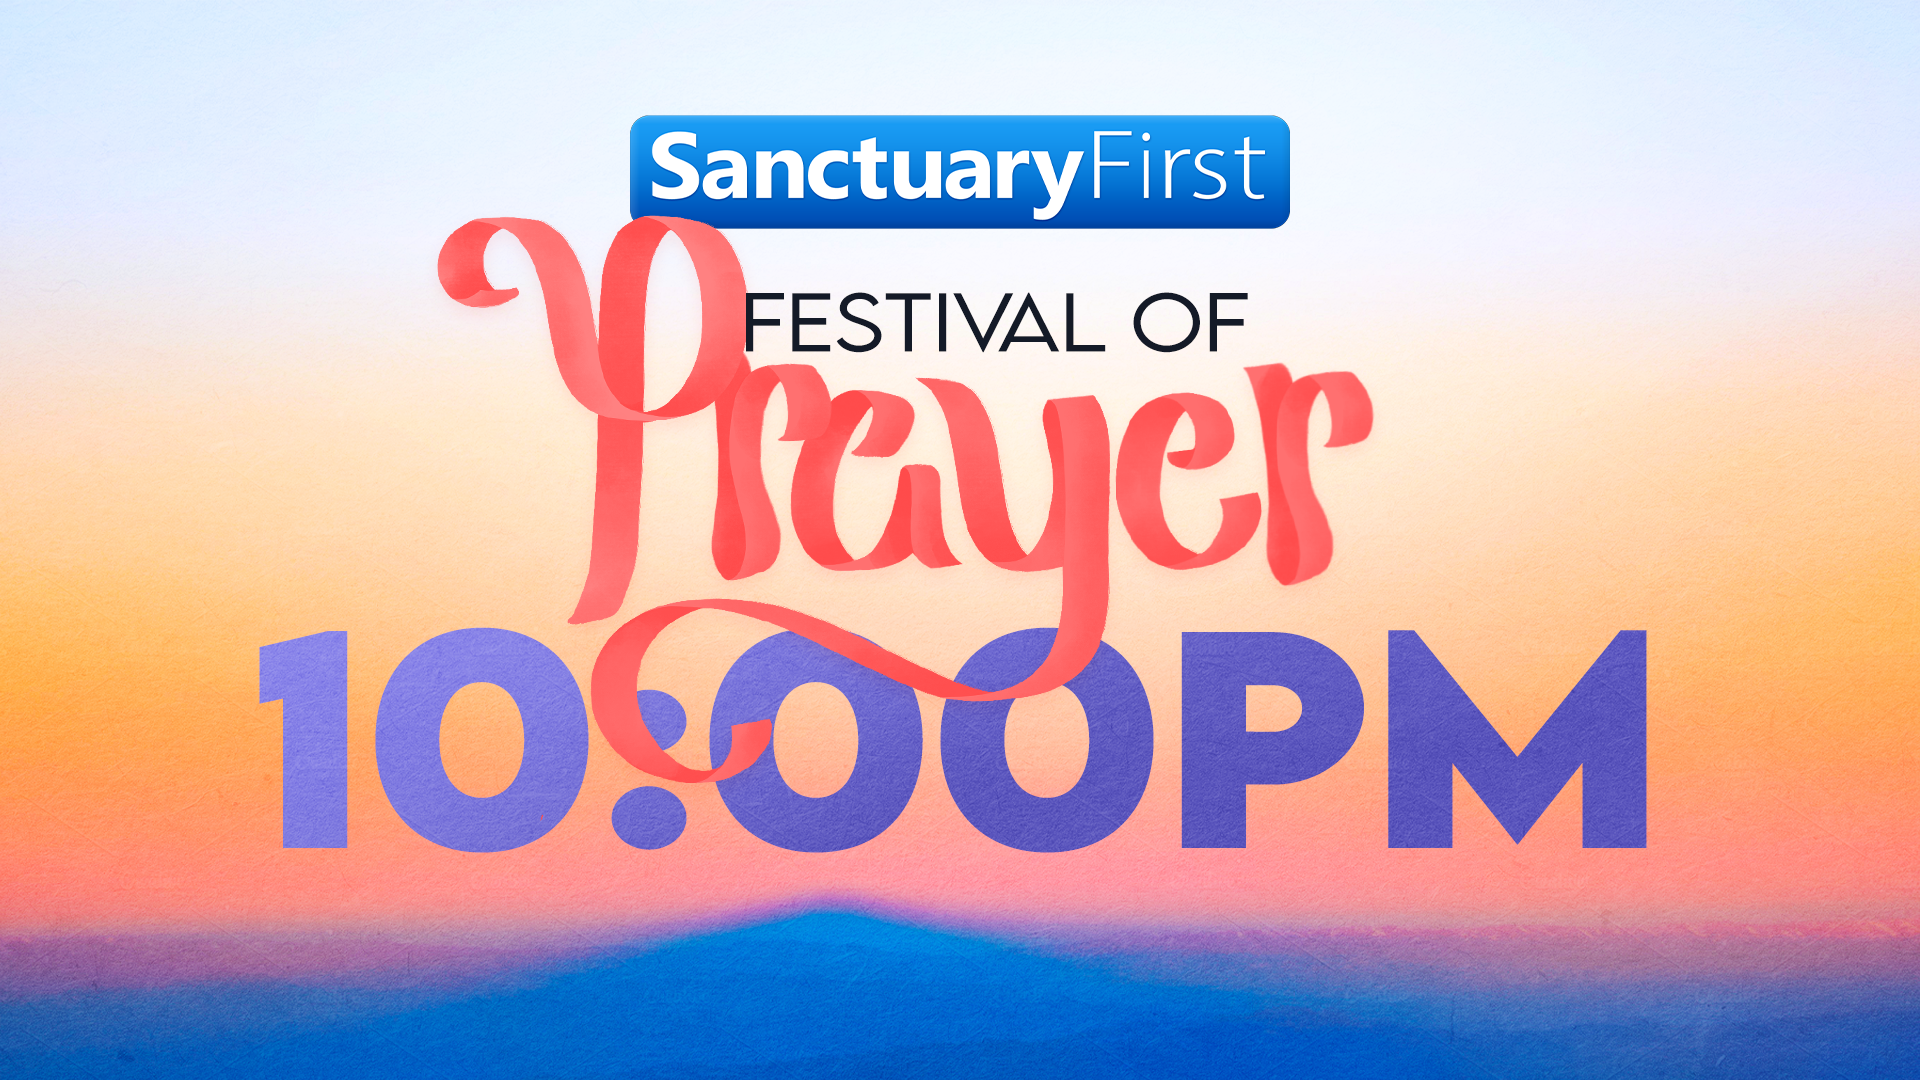 24hr Festival of Prayer - 10PM